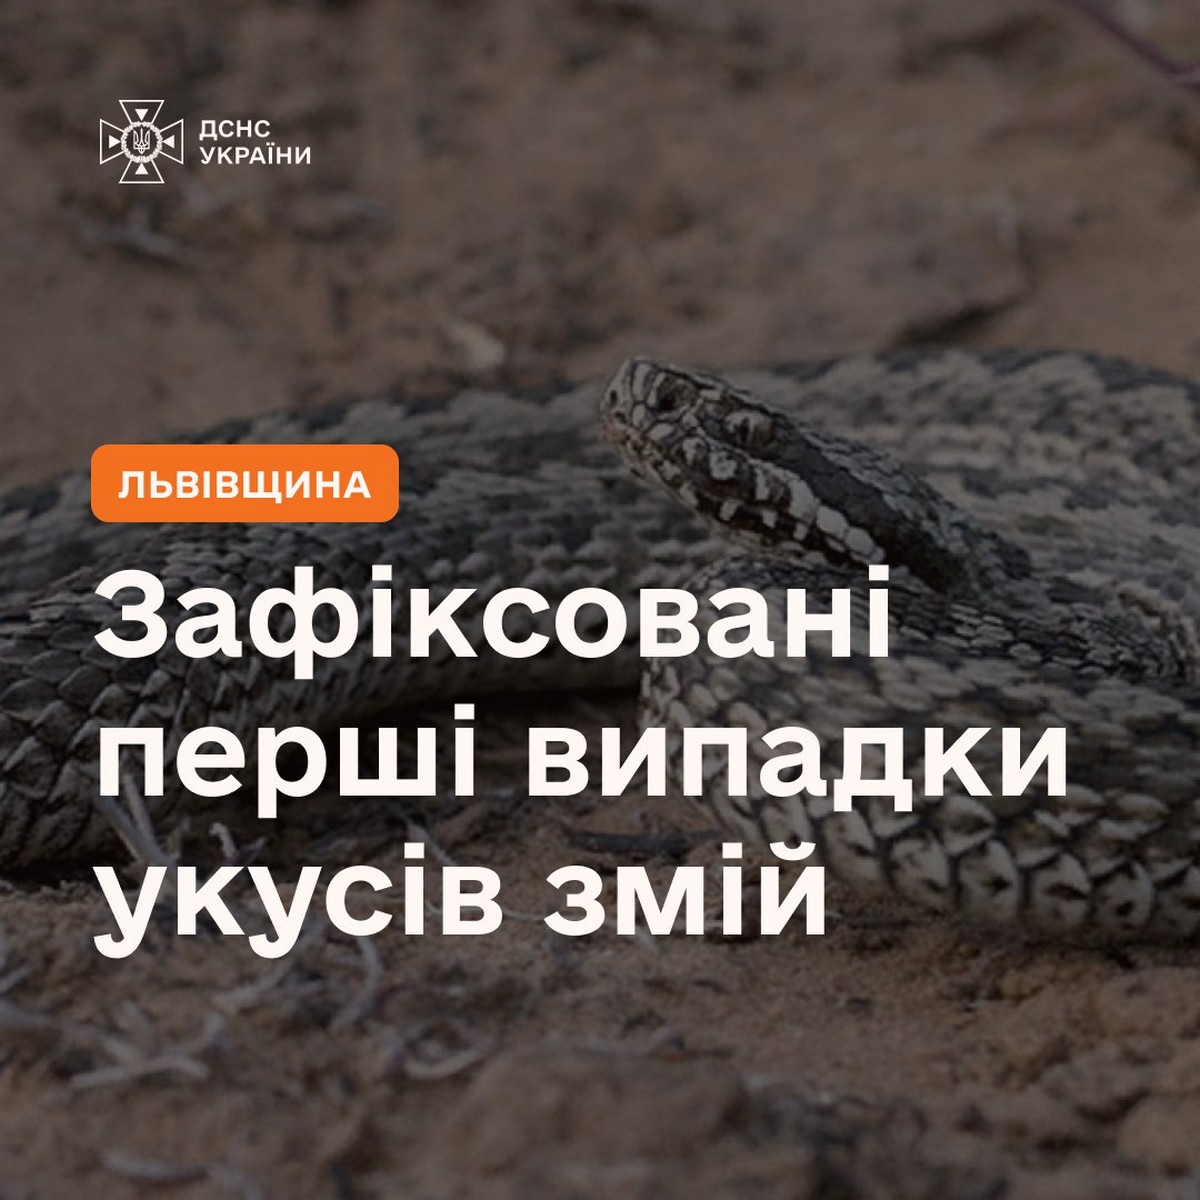 На Львівщині змії покусали людей – ДСНС попереджає про небезпеку